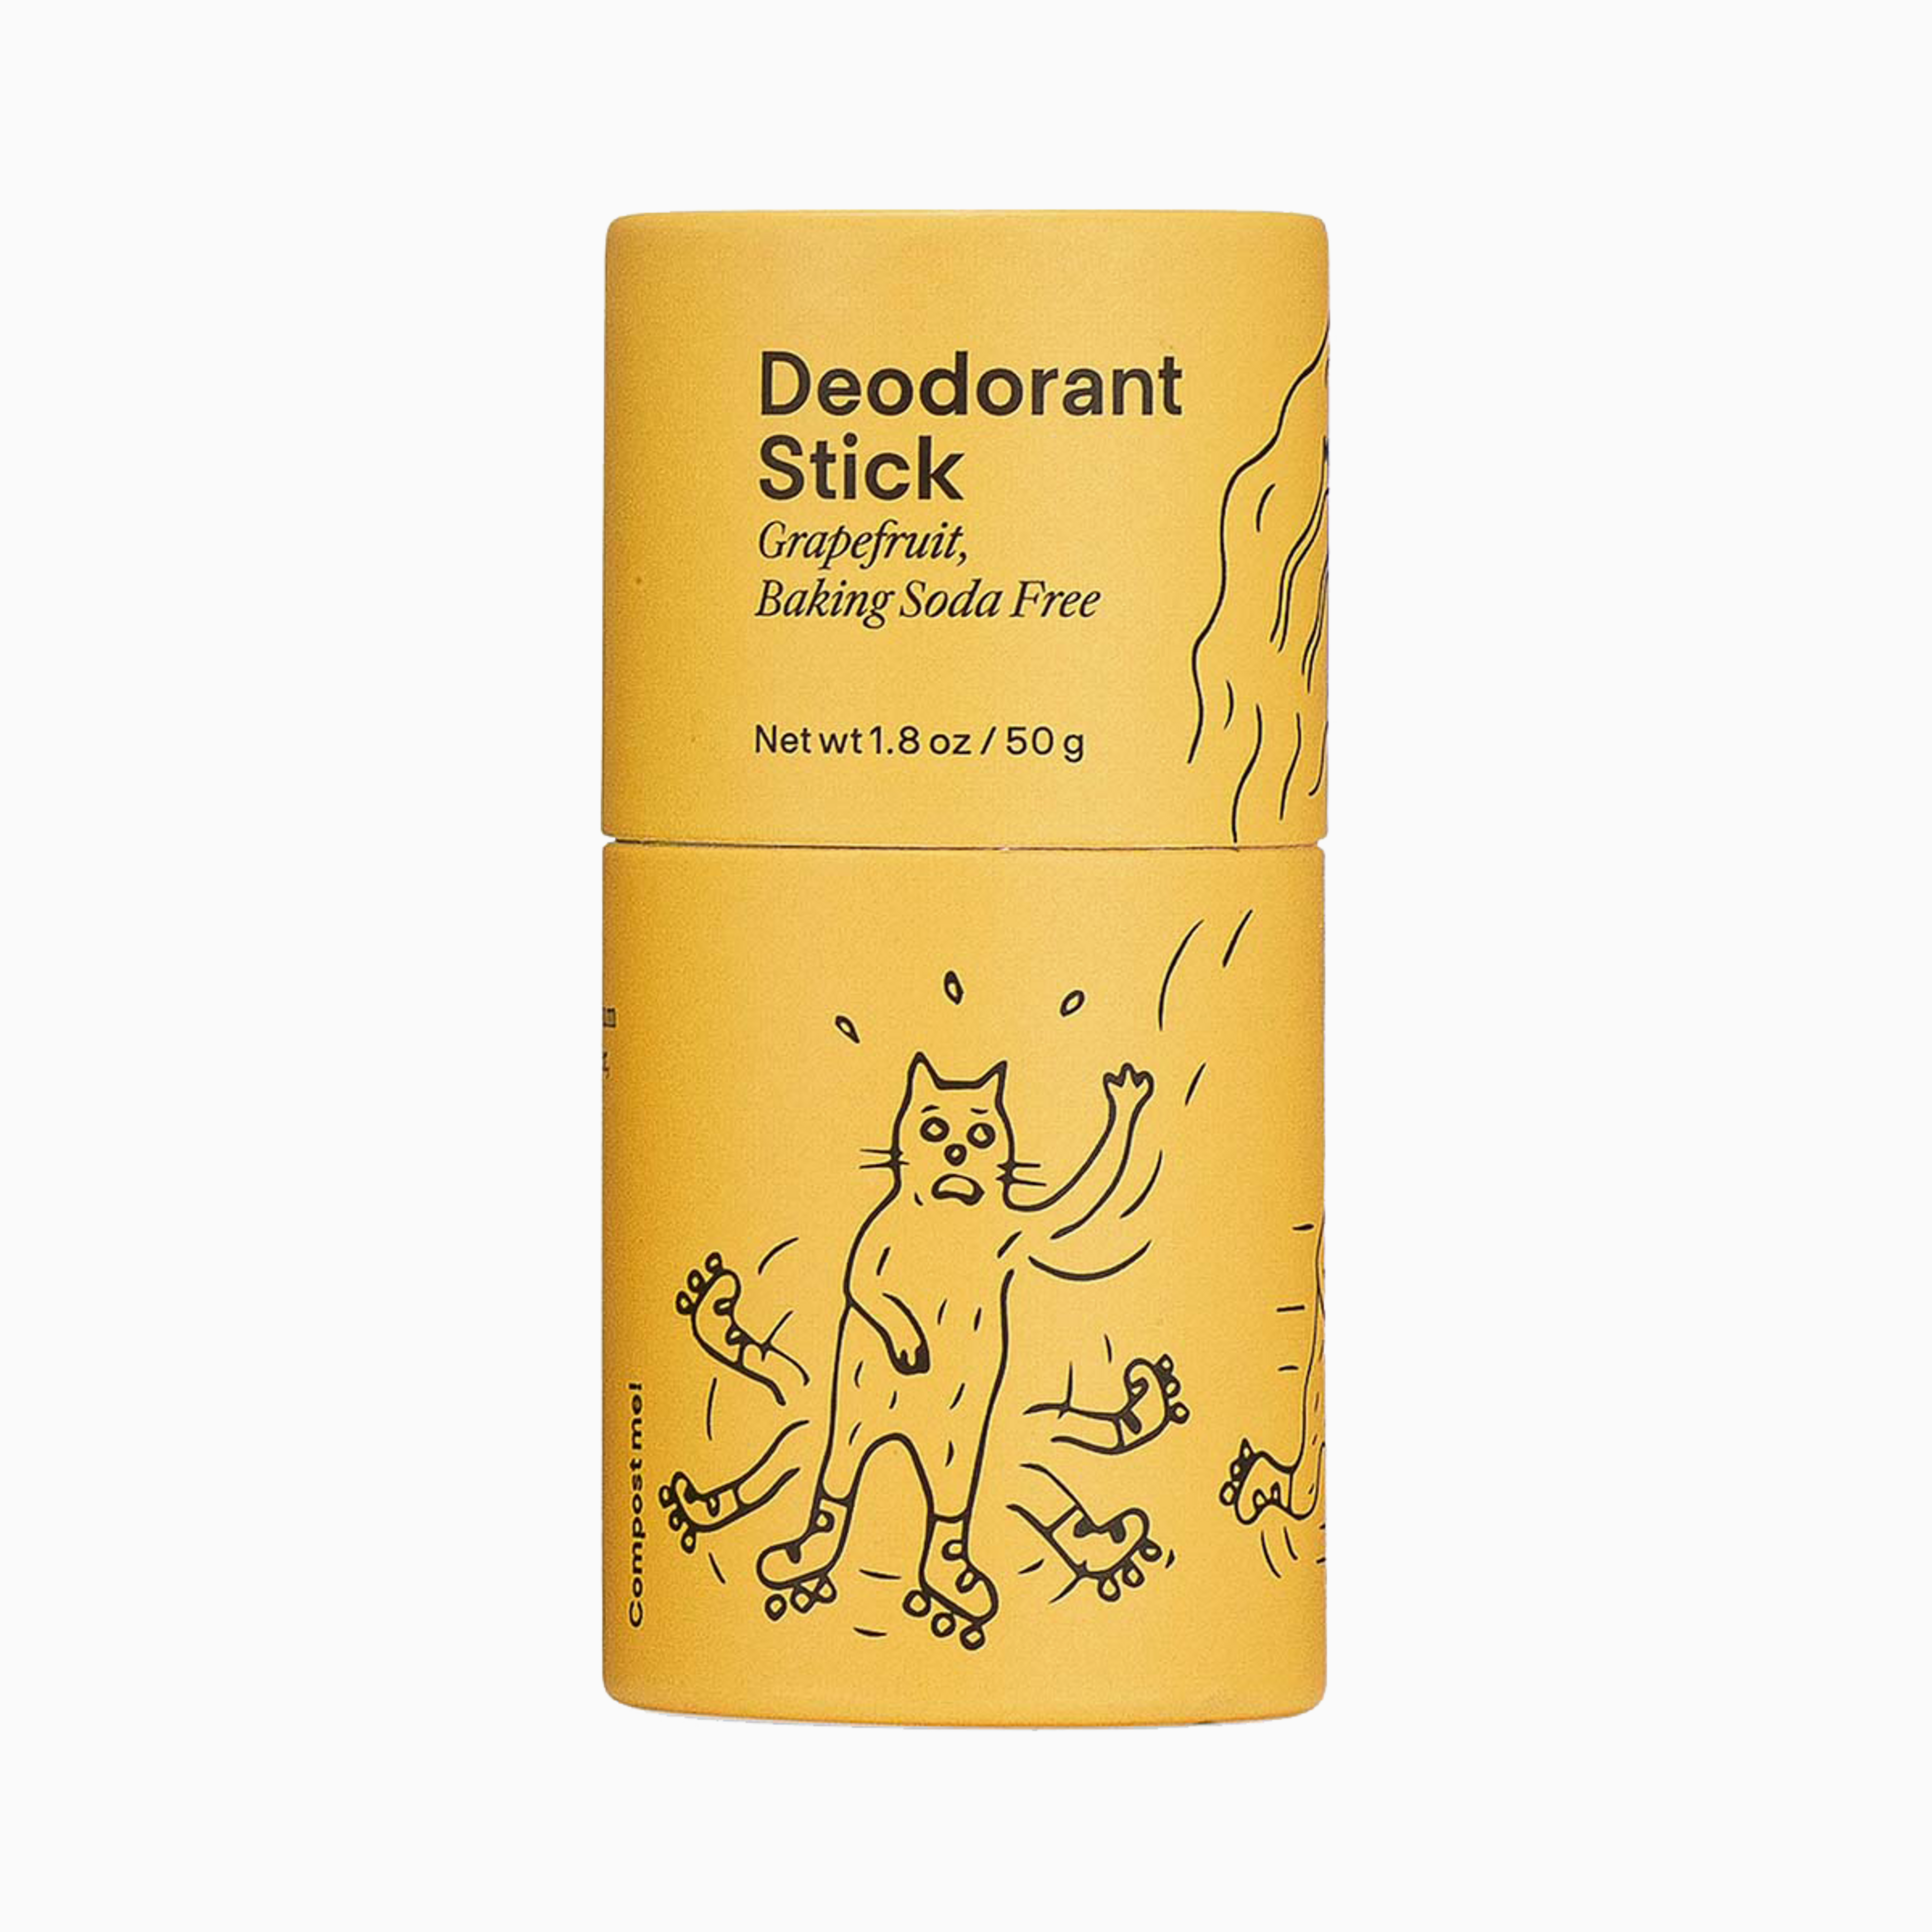 Deodorant Stick - Grapefruit (Baking Soda Free)